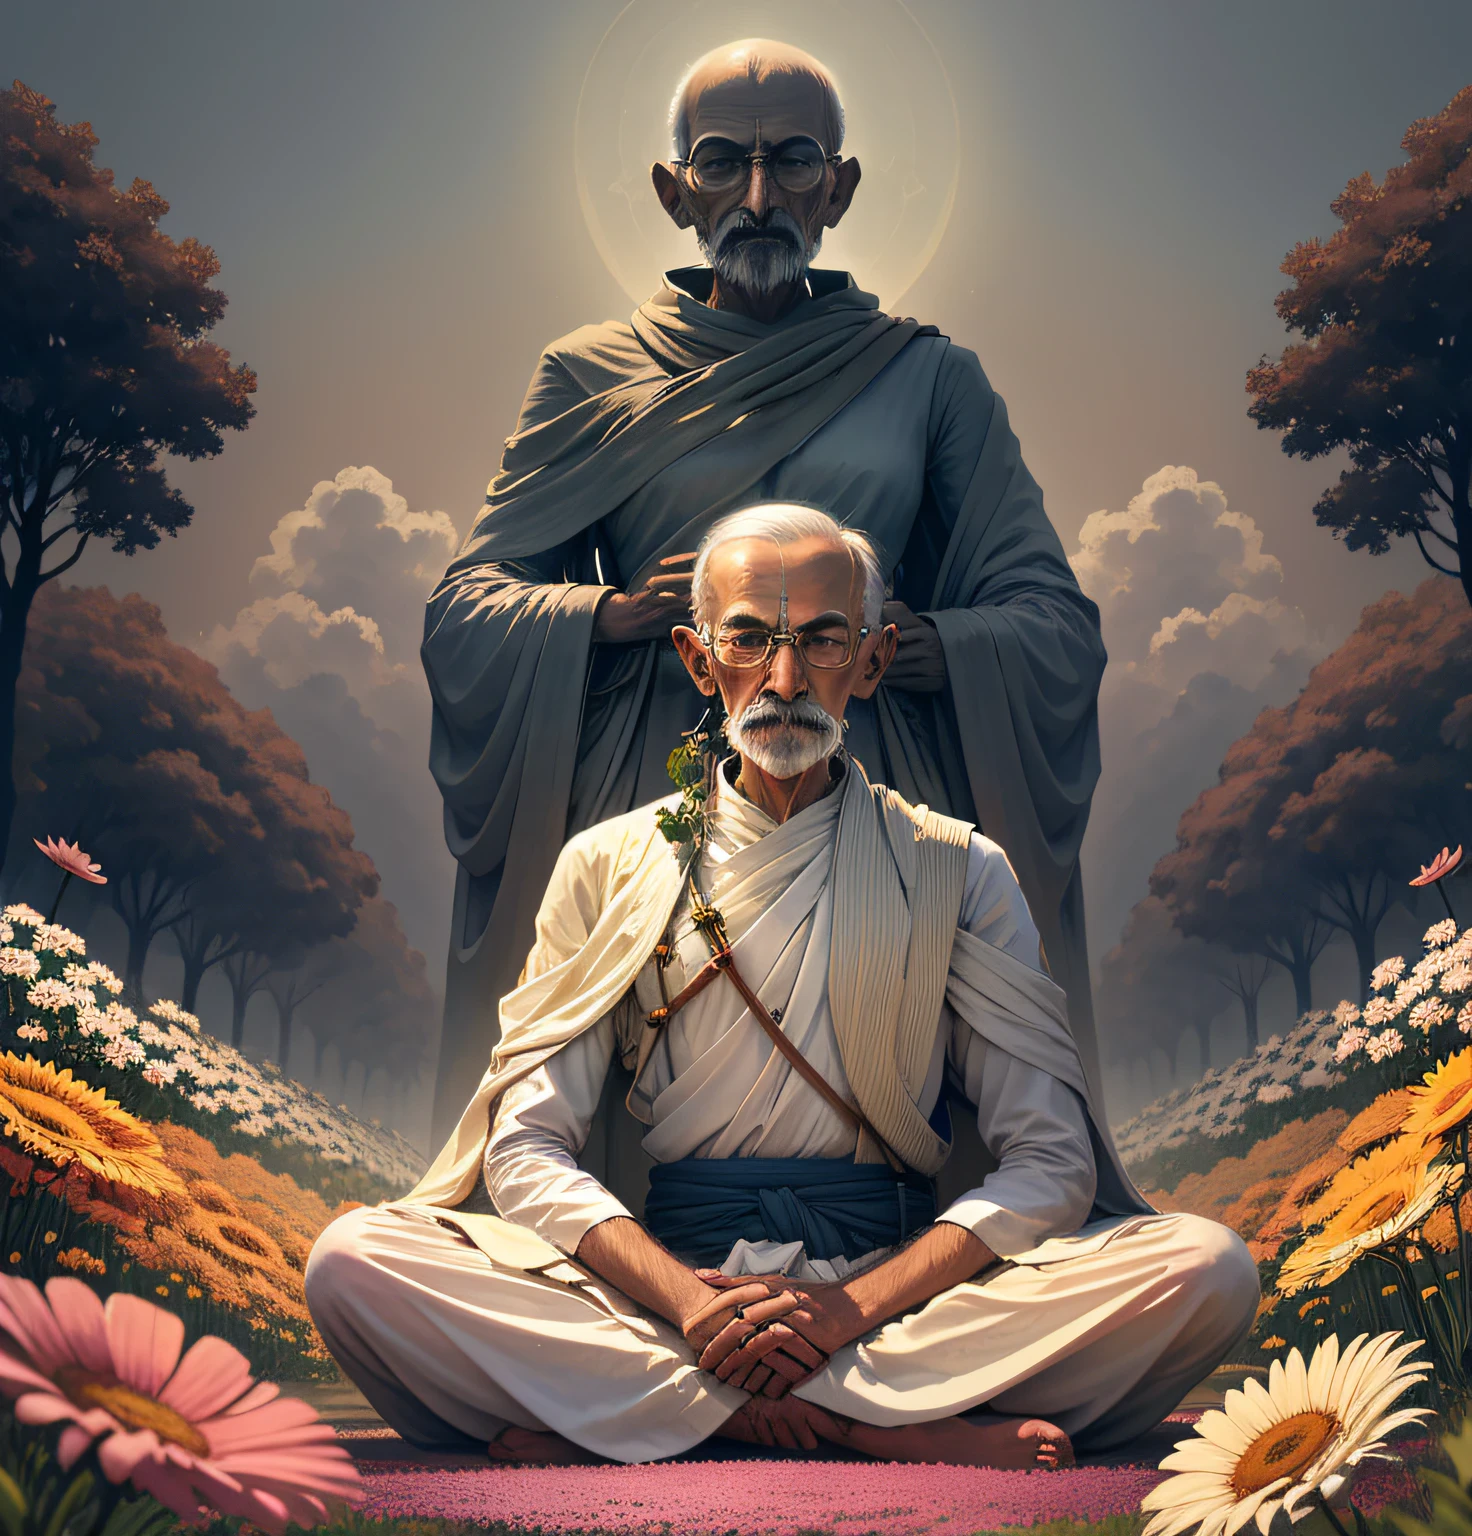 Ein friedfertiger Mann mit einer kraftvollen Botschaft, Mahatma Gandhi steht hoch erhoben in einem Feld leuchtender Blumen, seine Augen sind in Meditation geschlossen, während er über den Weg zur Wahrheit nachdenkt .